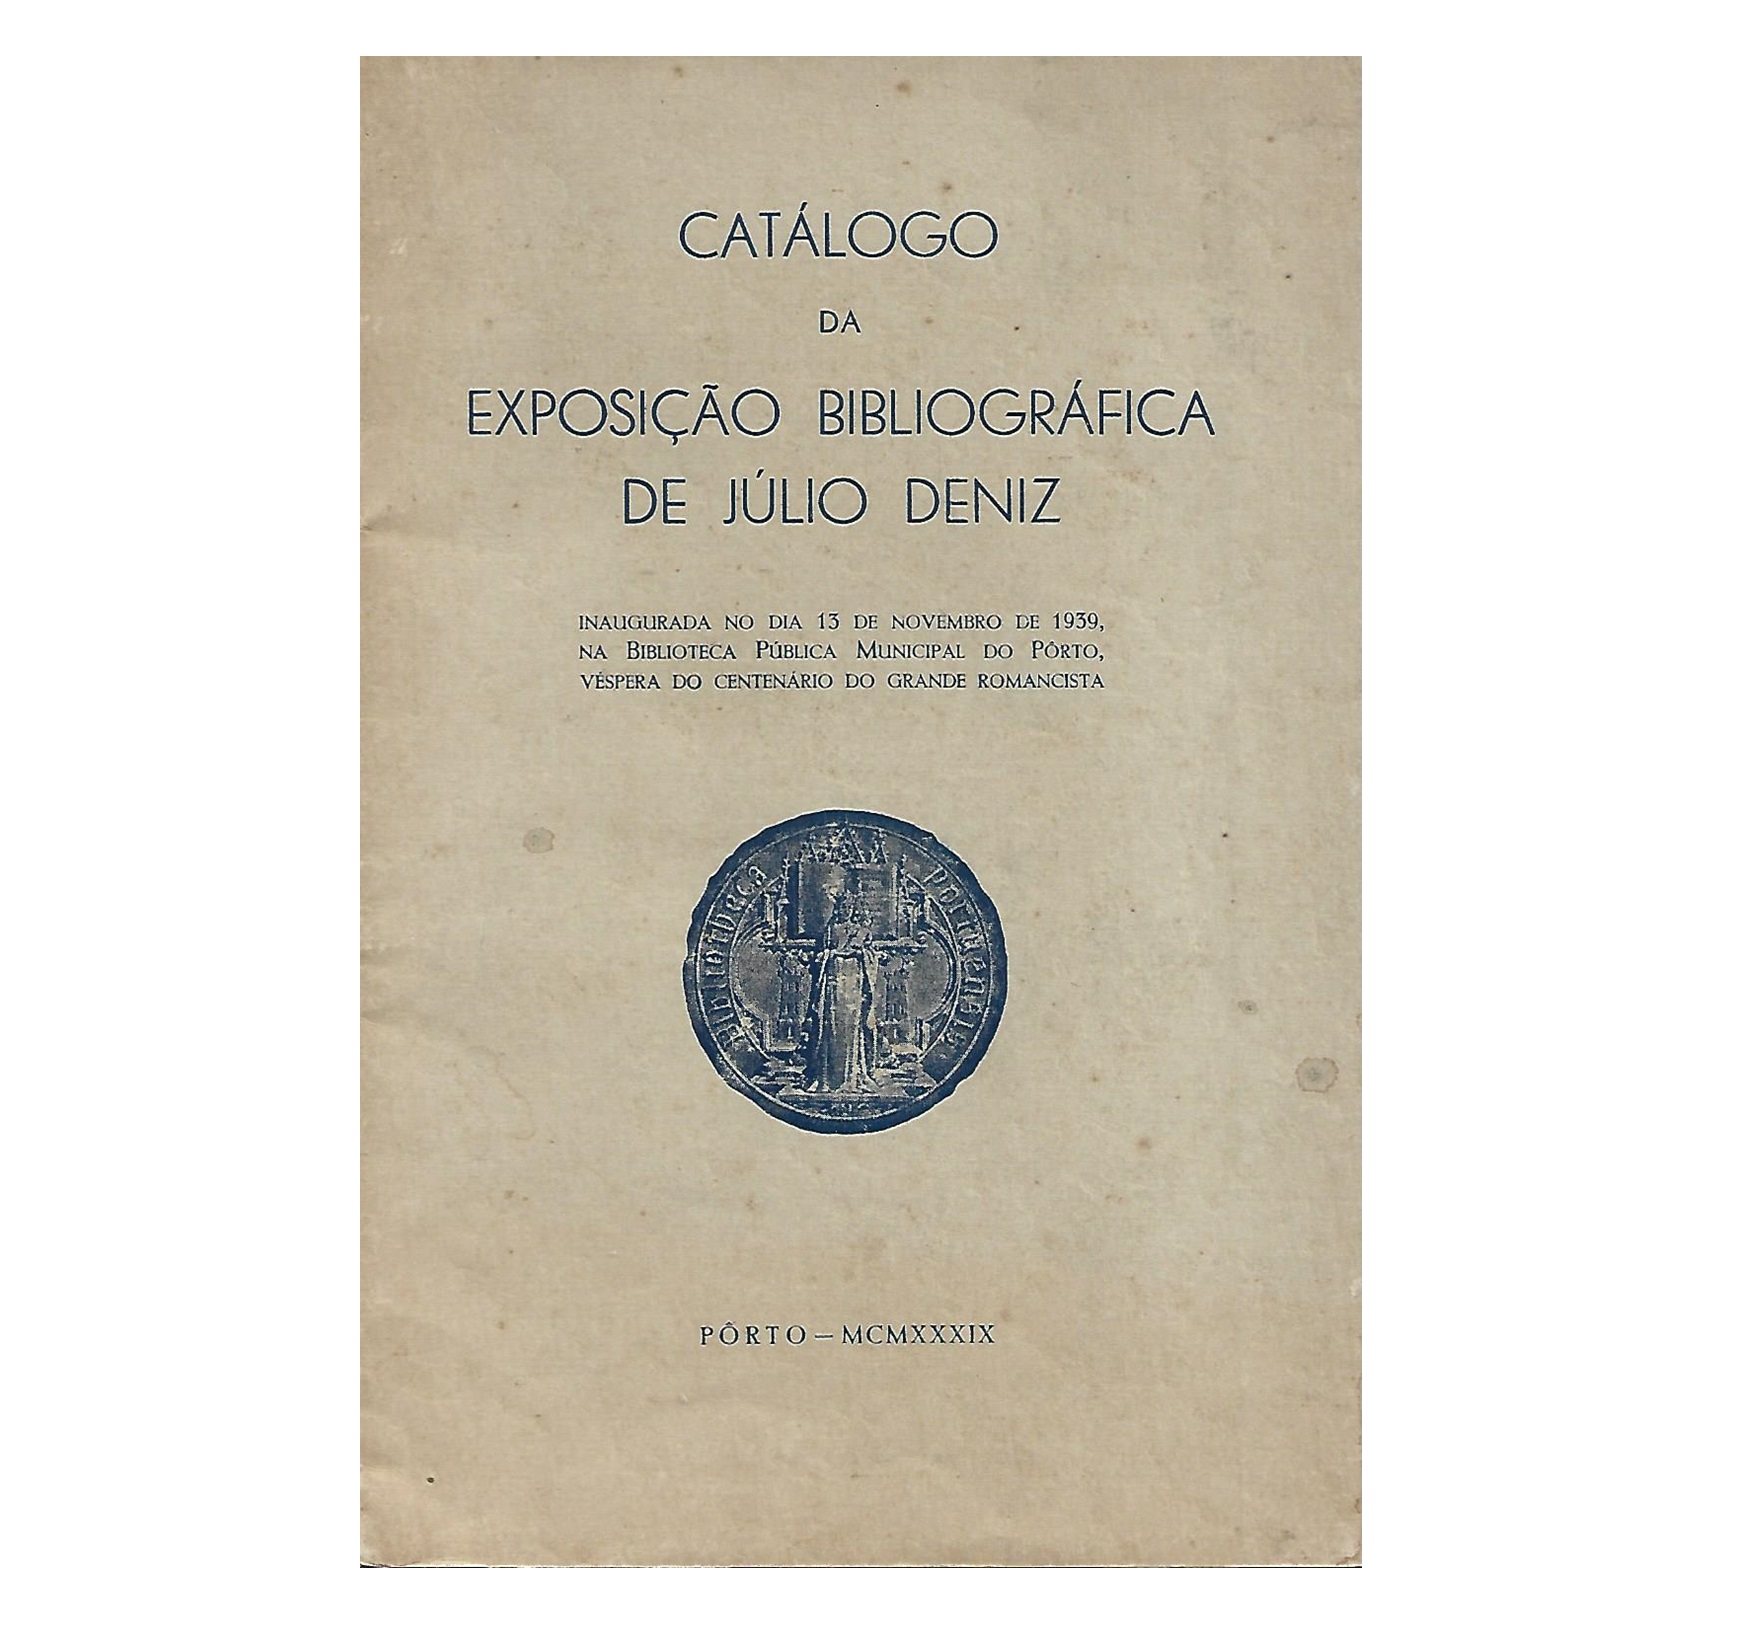 CATÁLOGO DA EXPOSIÇÃO BIBLIOGRÁFICA DE JÚLIO DENIZ